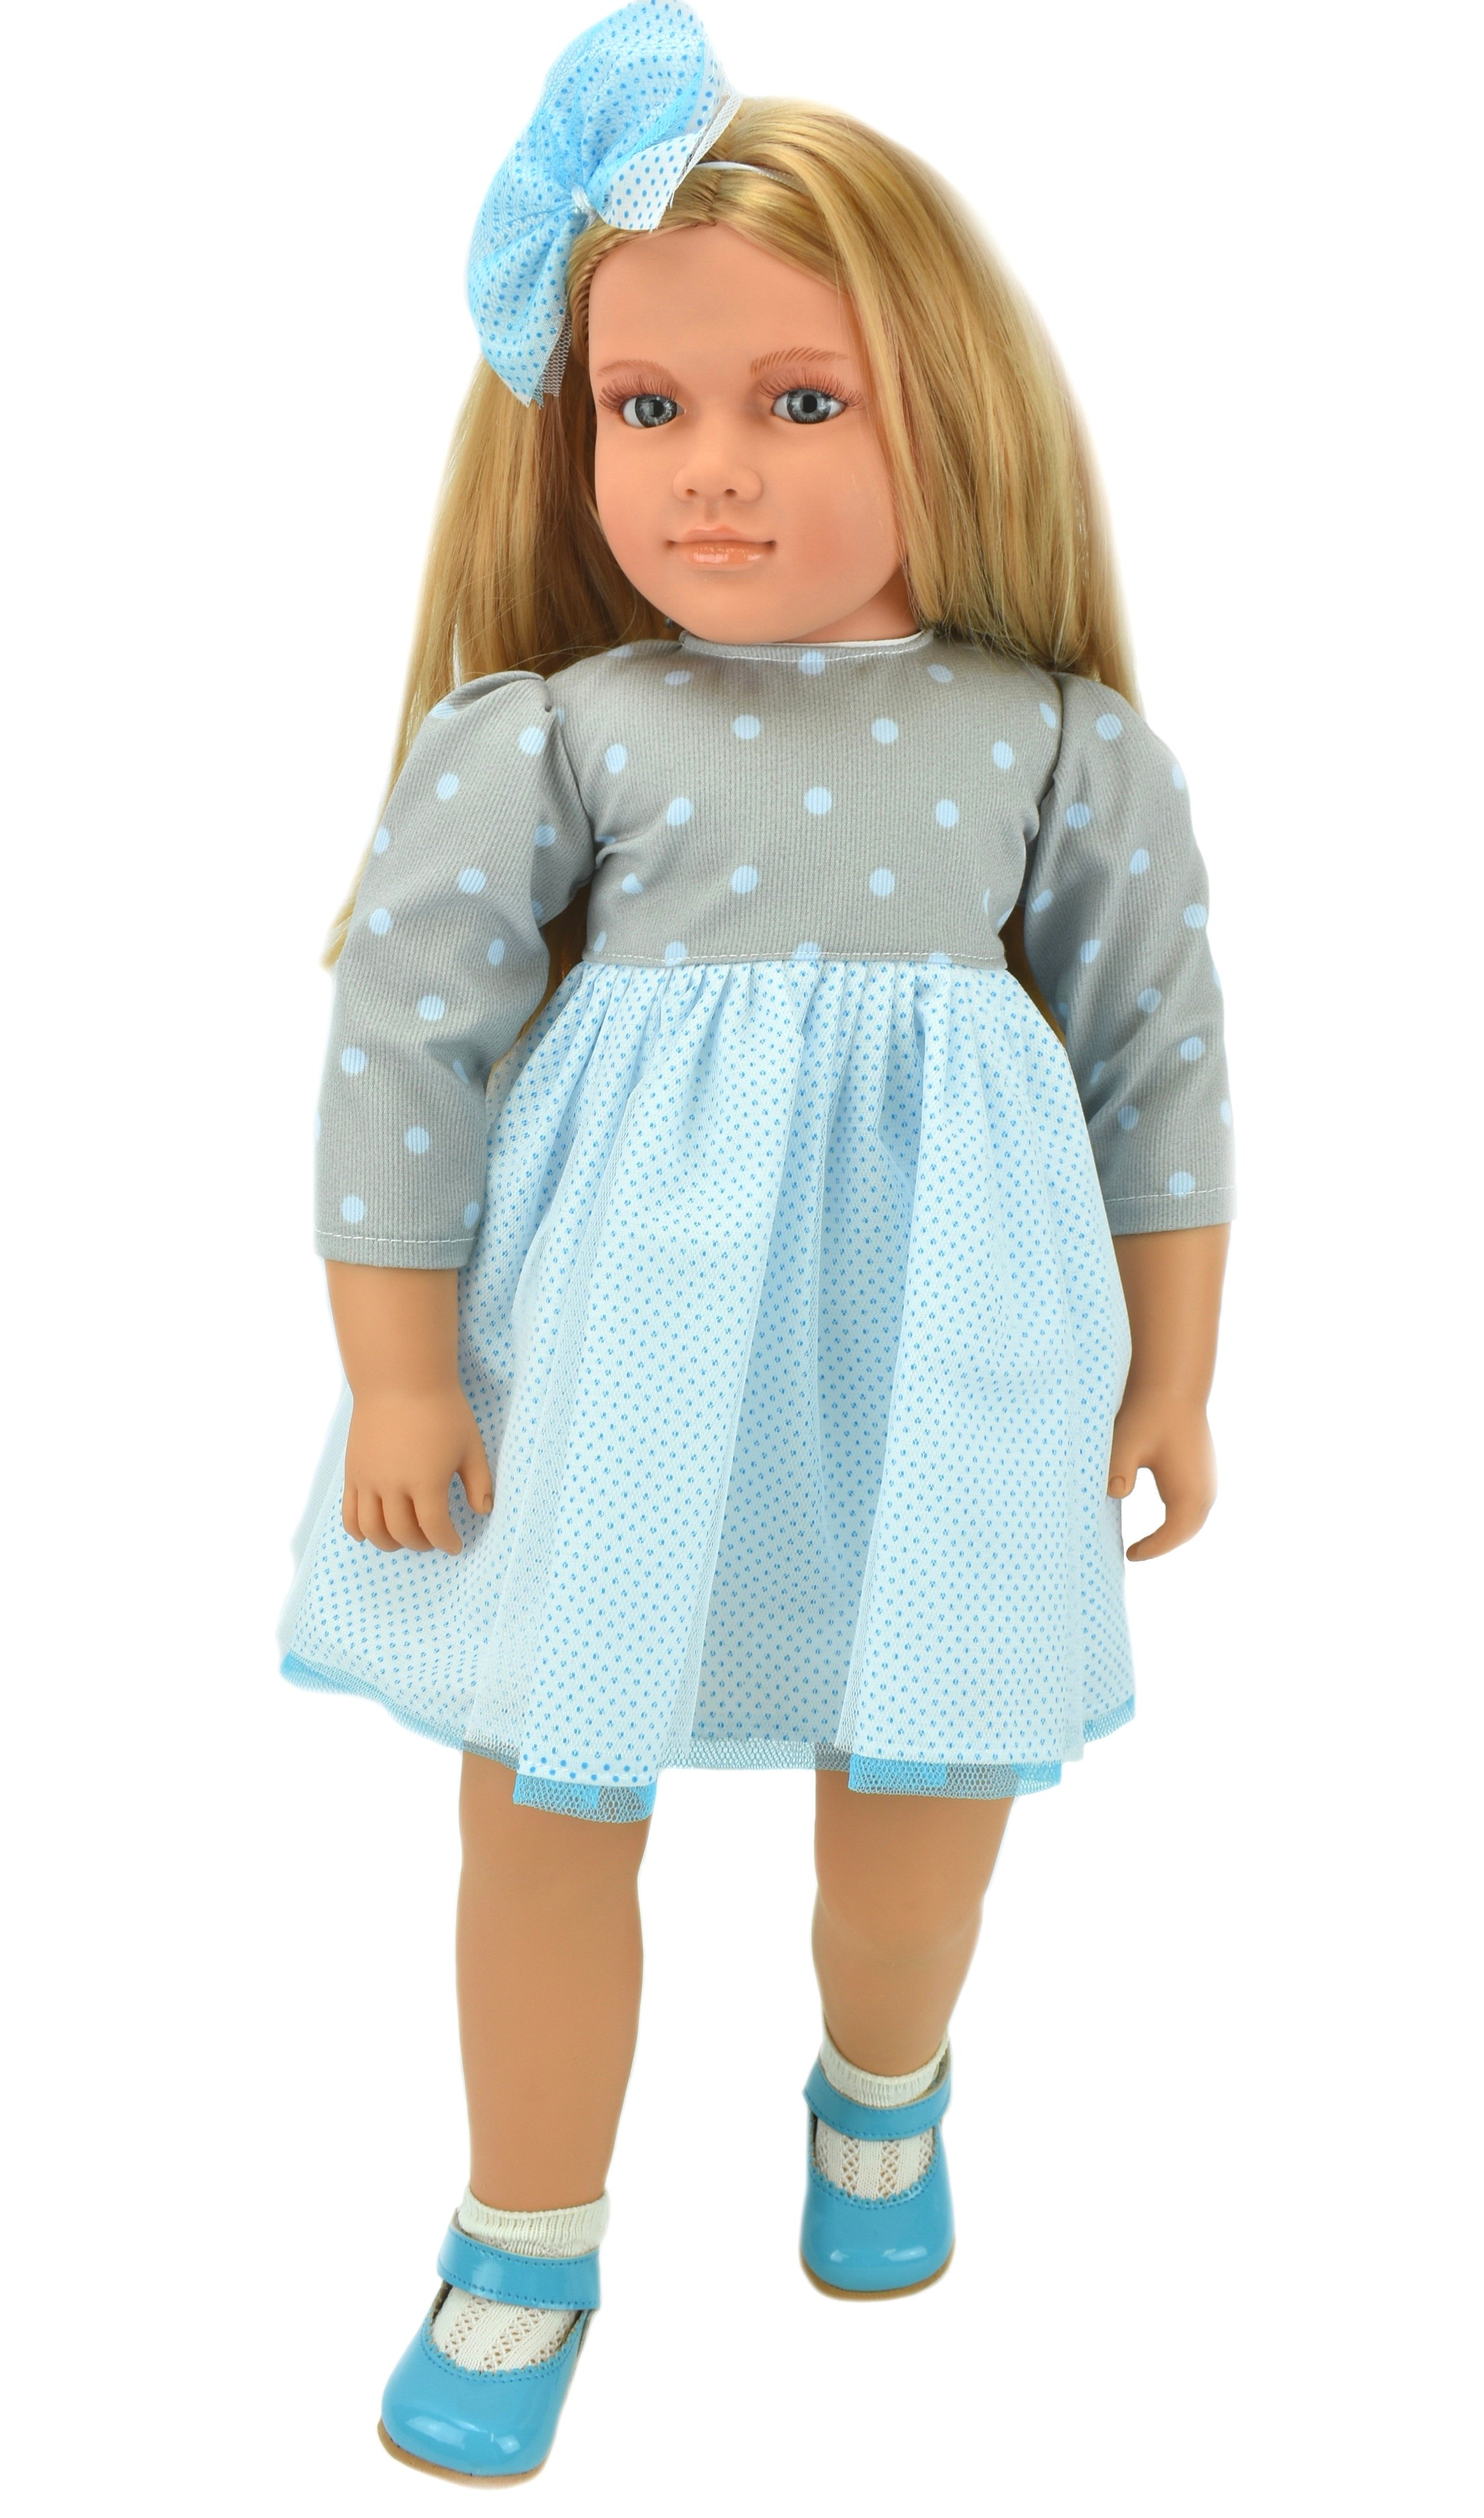 Коллекционная кукла Lamagik Ширли блондинка, в серо-белом платье в горох, 62 см, B9004 lamagik s l коллекционная кукла джеральдин в астом комбинезоне рыжая 62 см